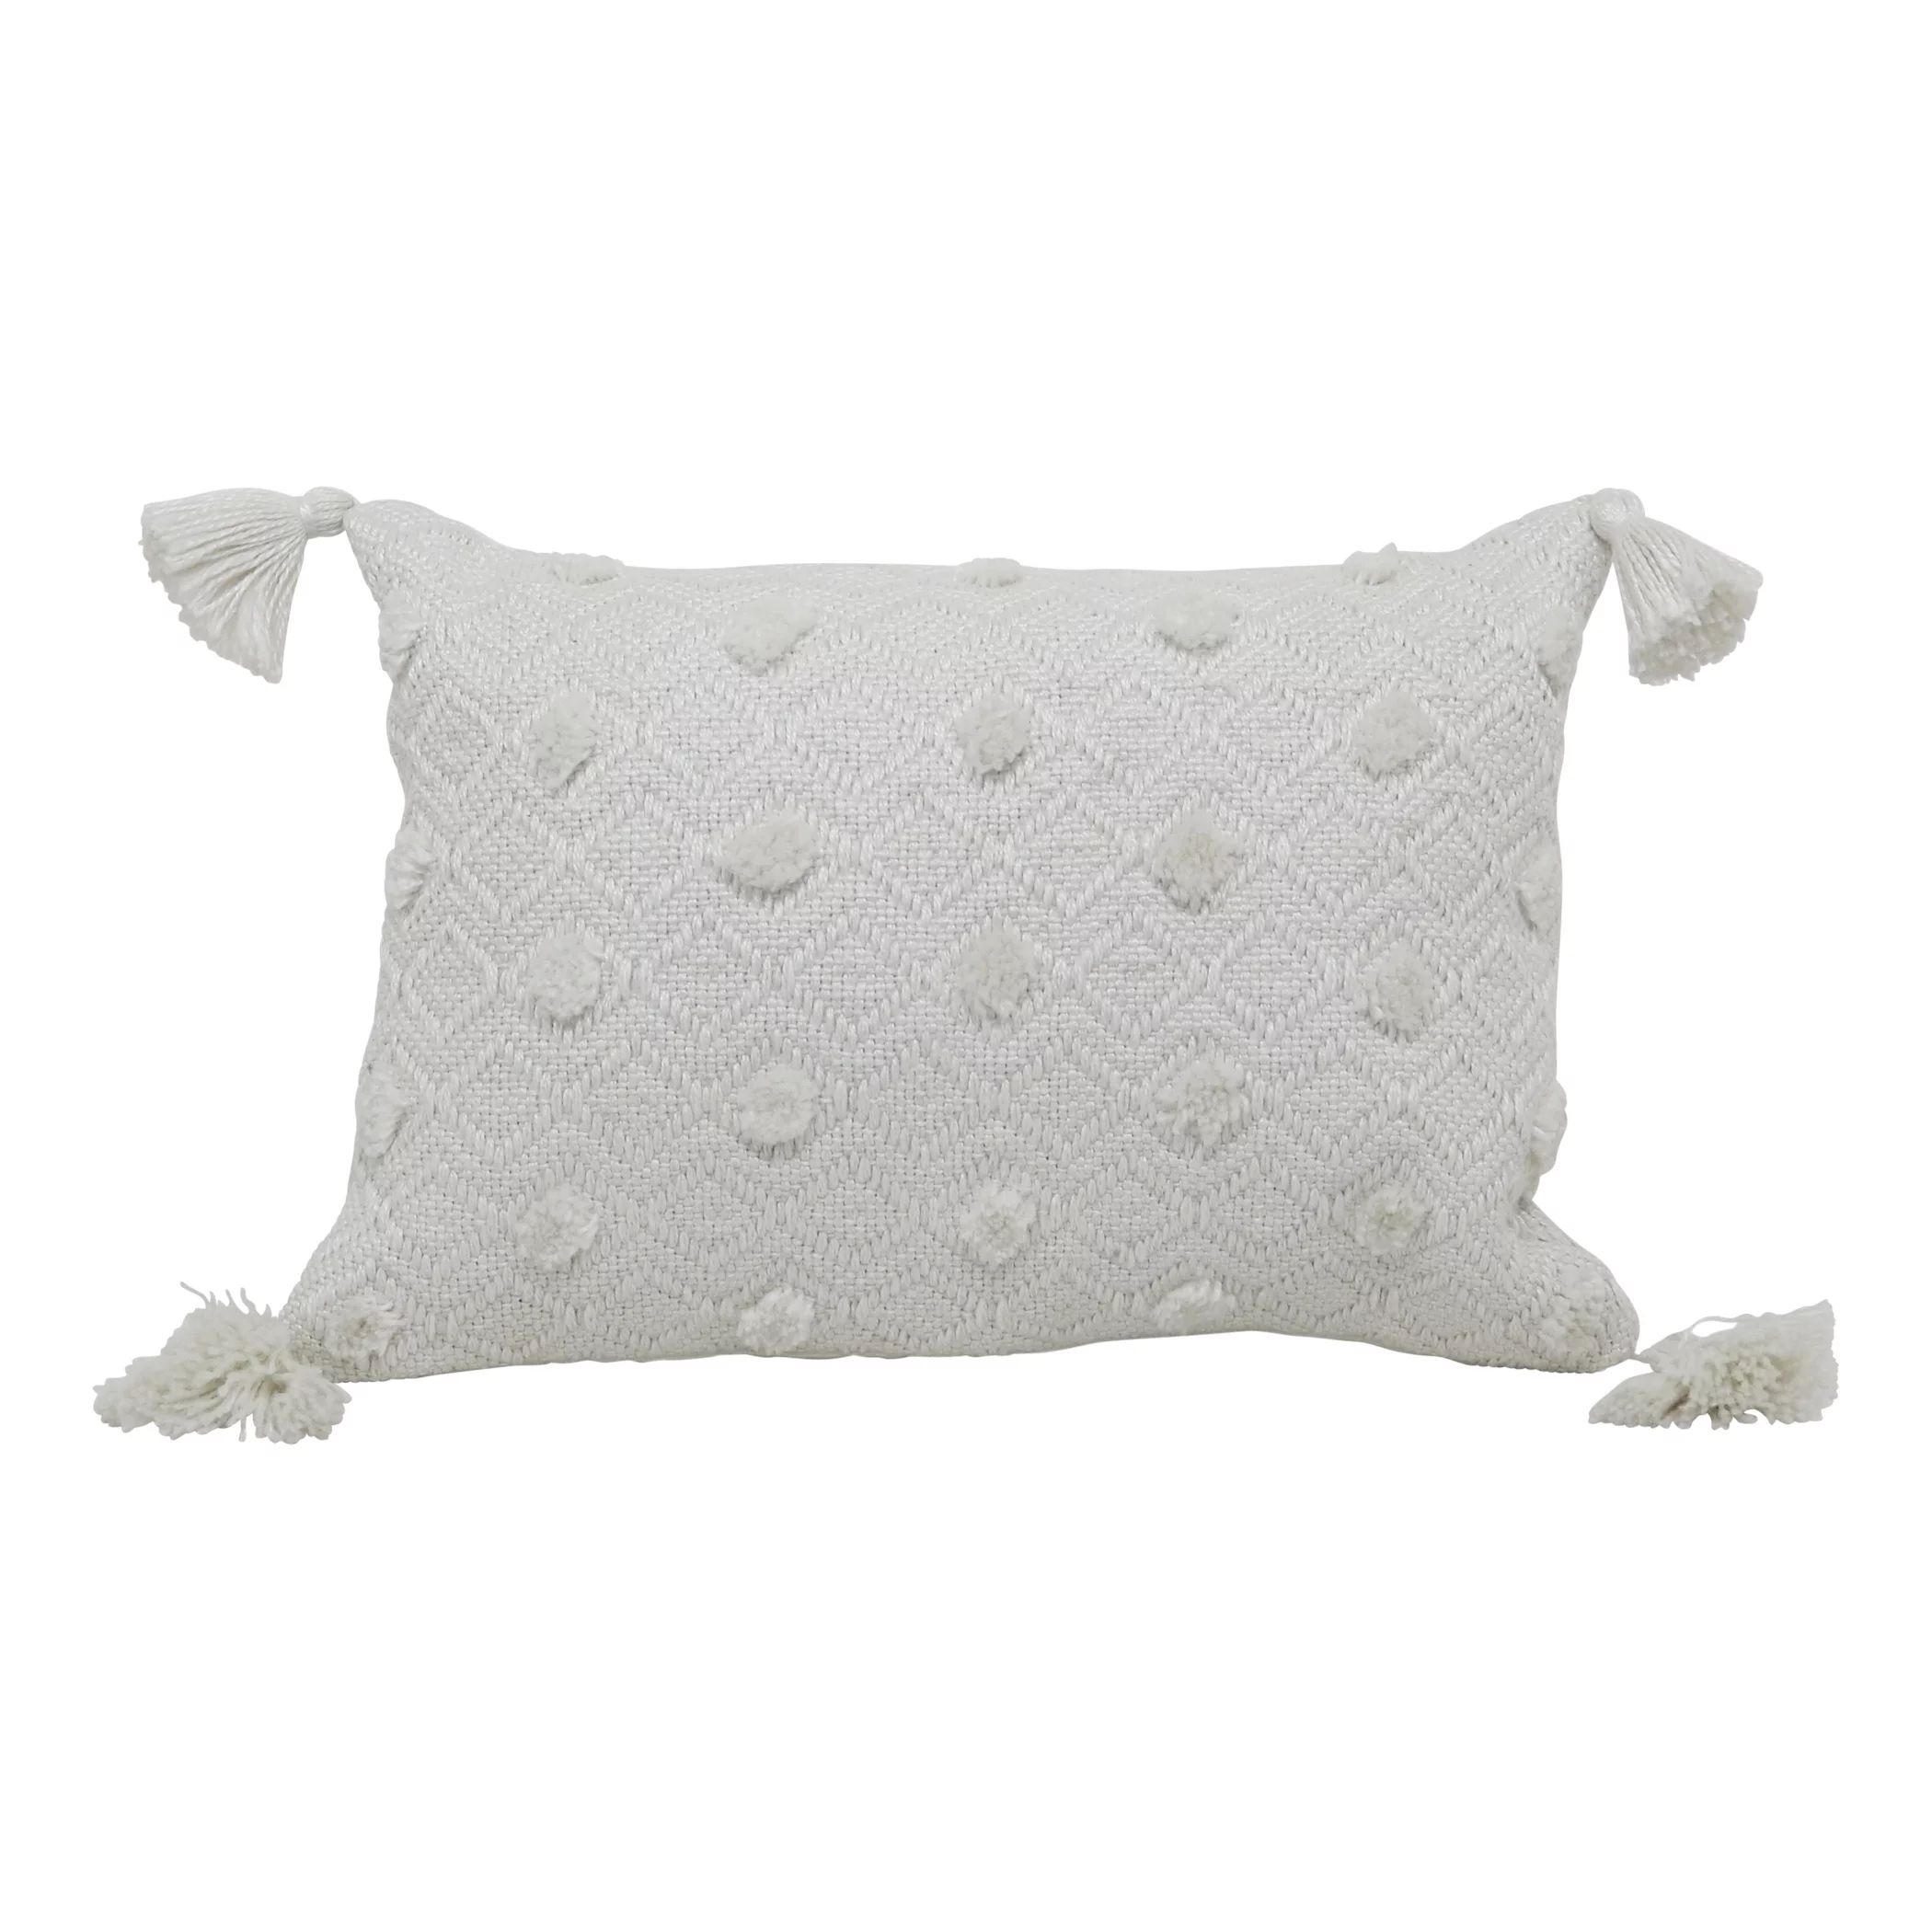 Better Homes & Gardens 13" x 19" Outdoor Toss Pillow, Ivory Woven, Rectangle, 1 Pillow per Pack | Walmart (US)